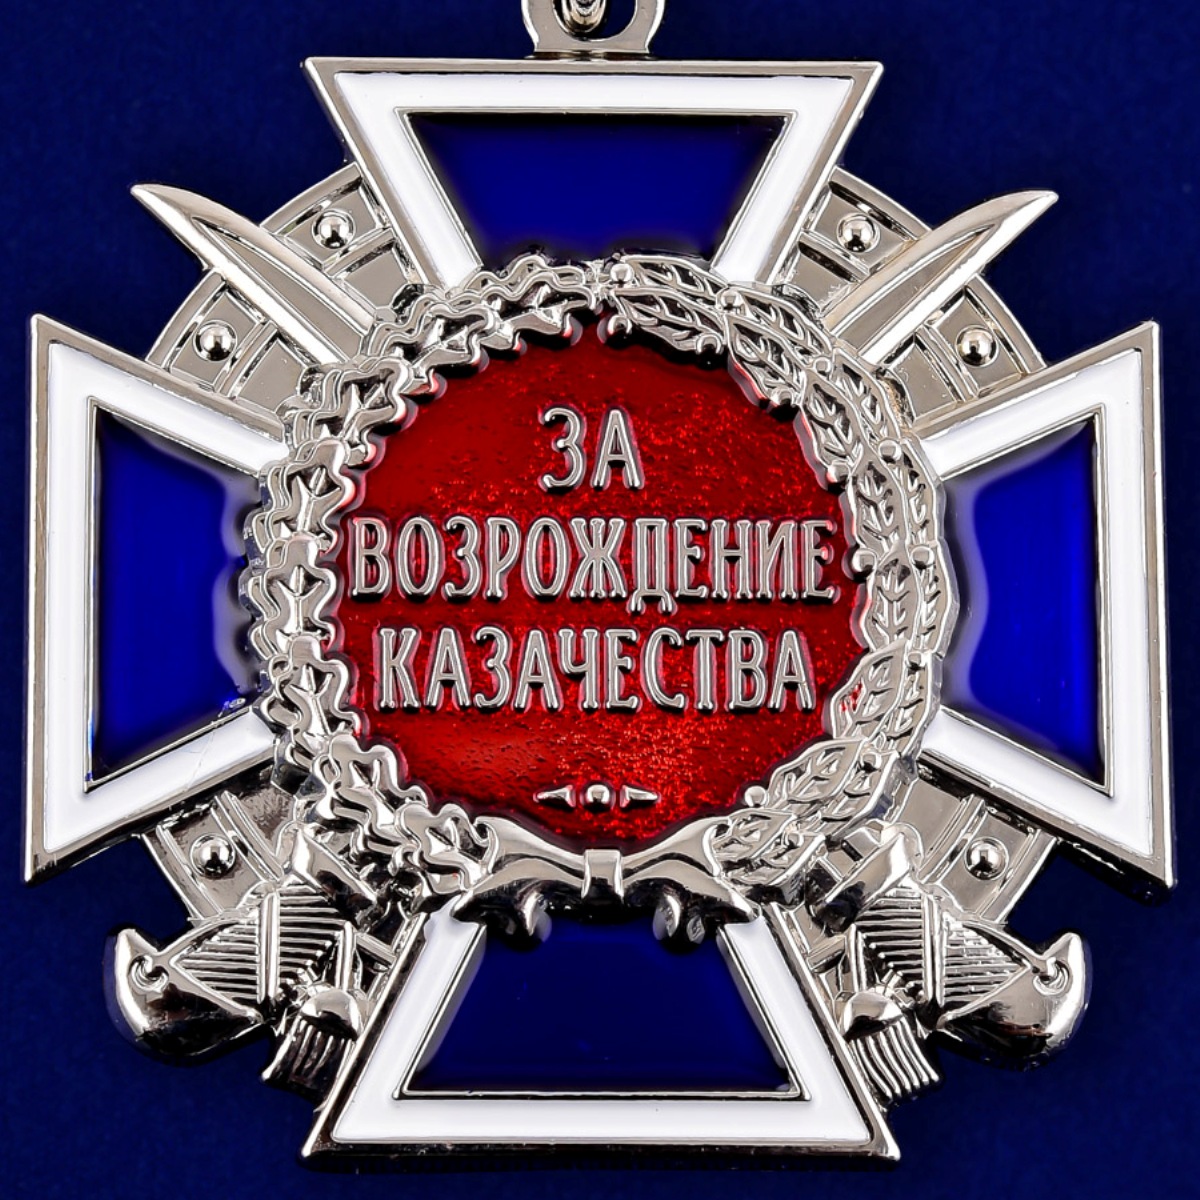 Медаль "За возрождение казачества" 2 степени 